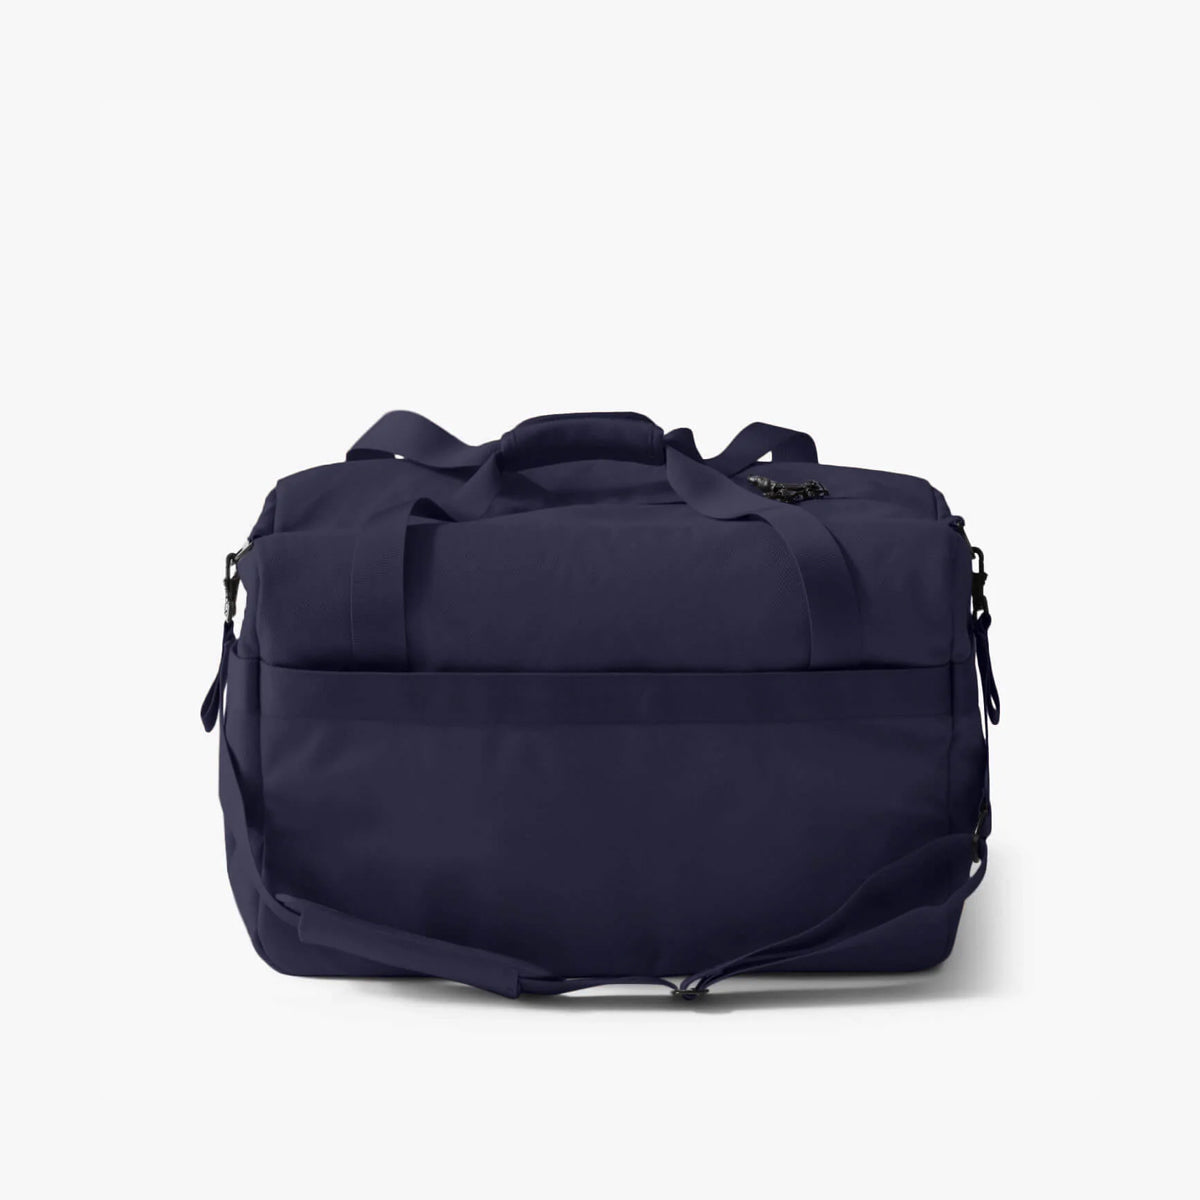 Langly : Weekender Duffle Bag : Navy